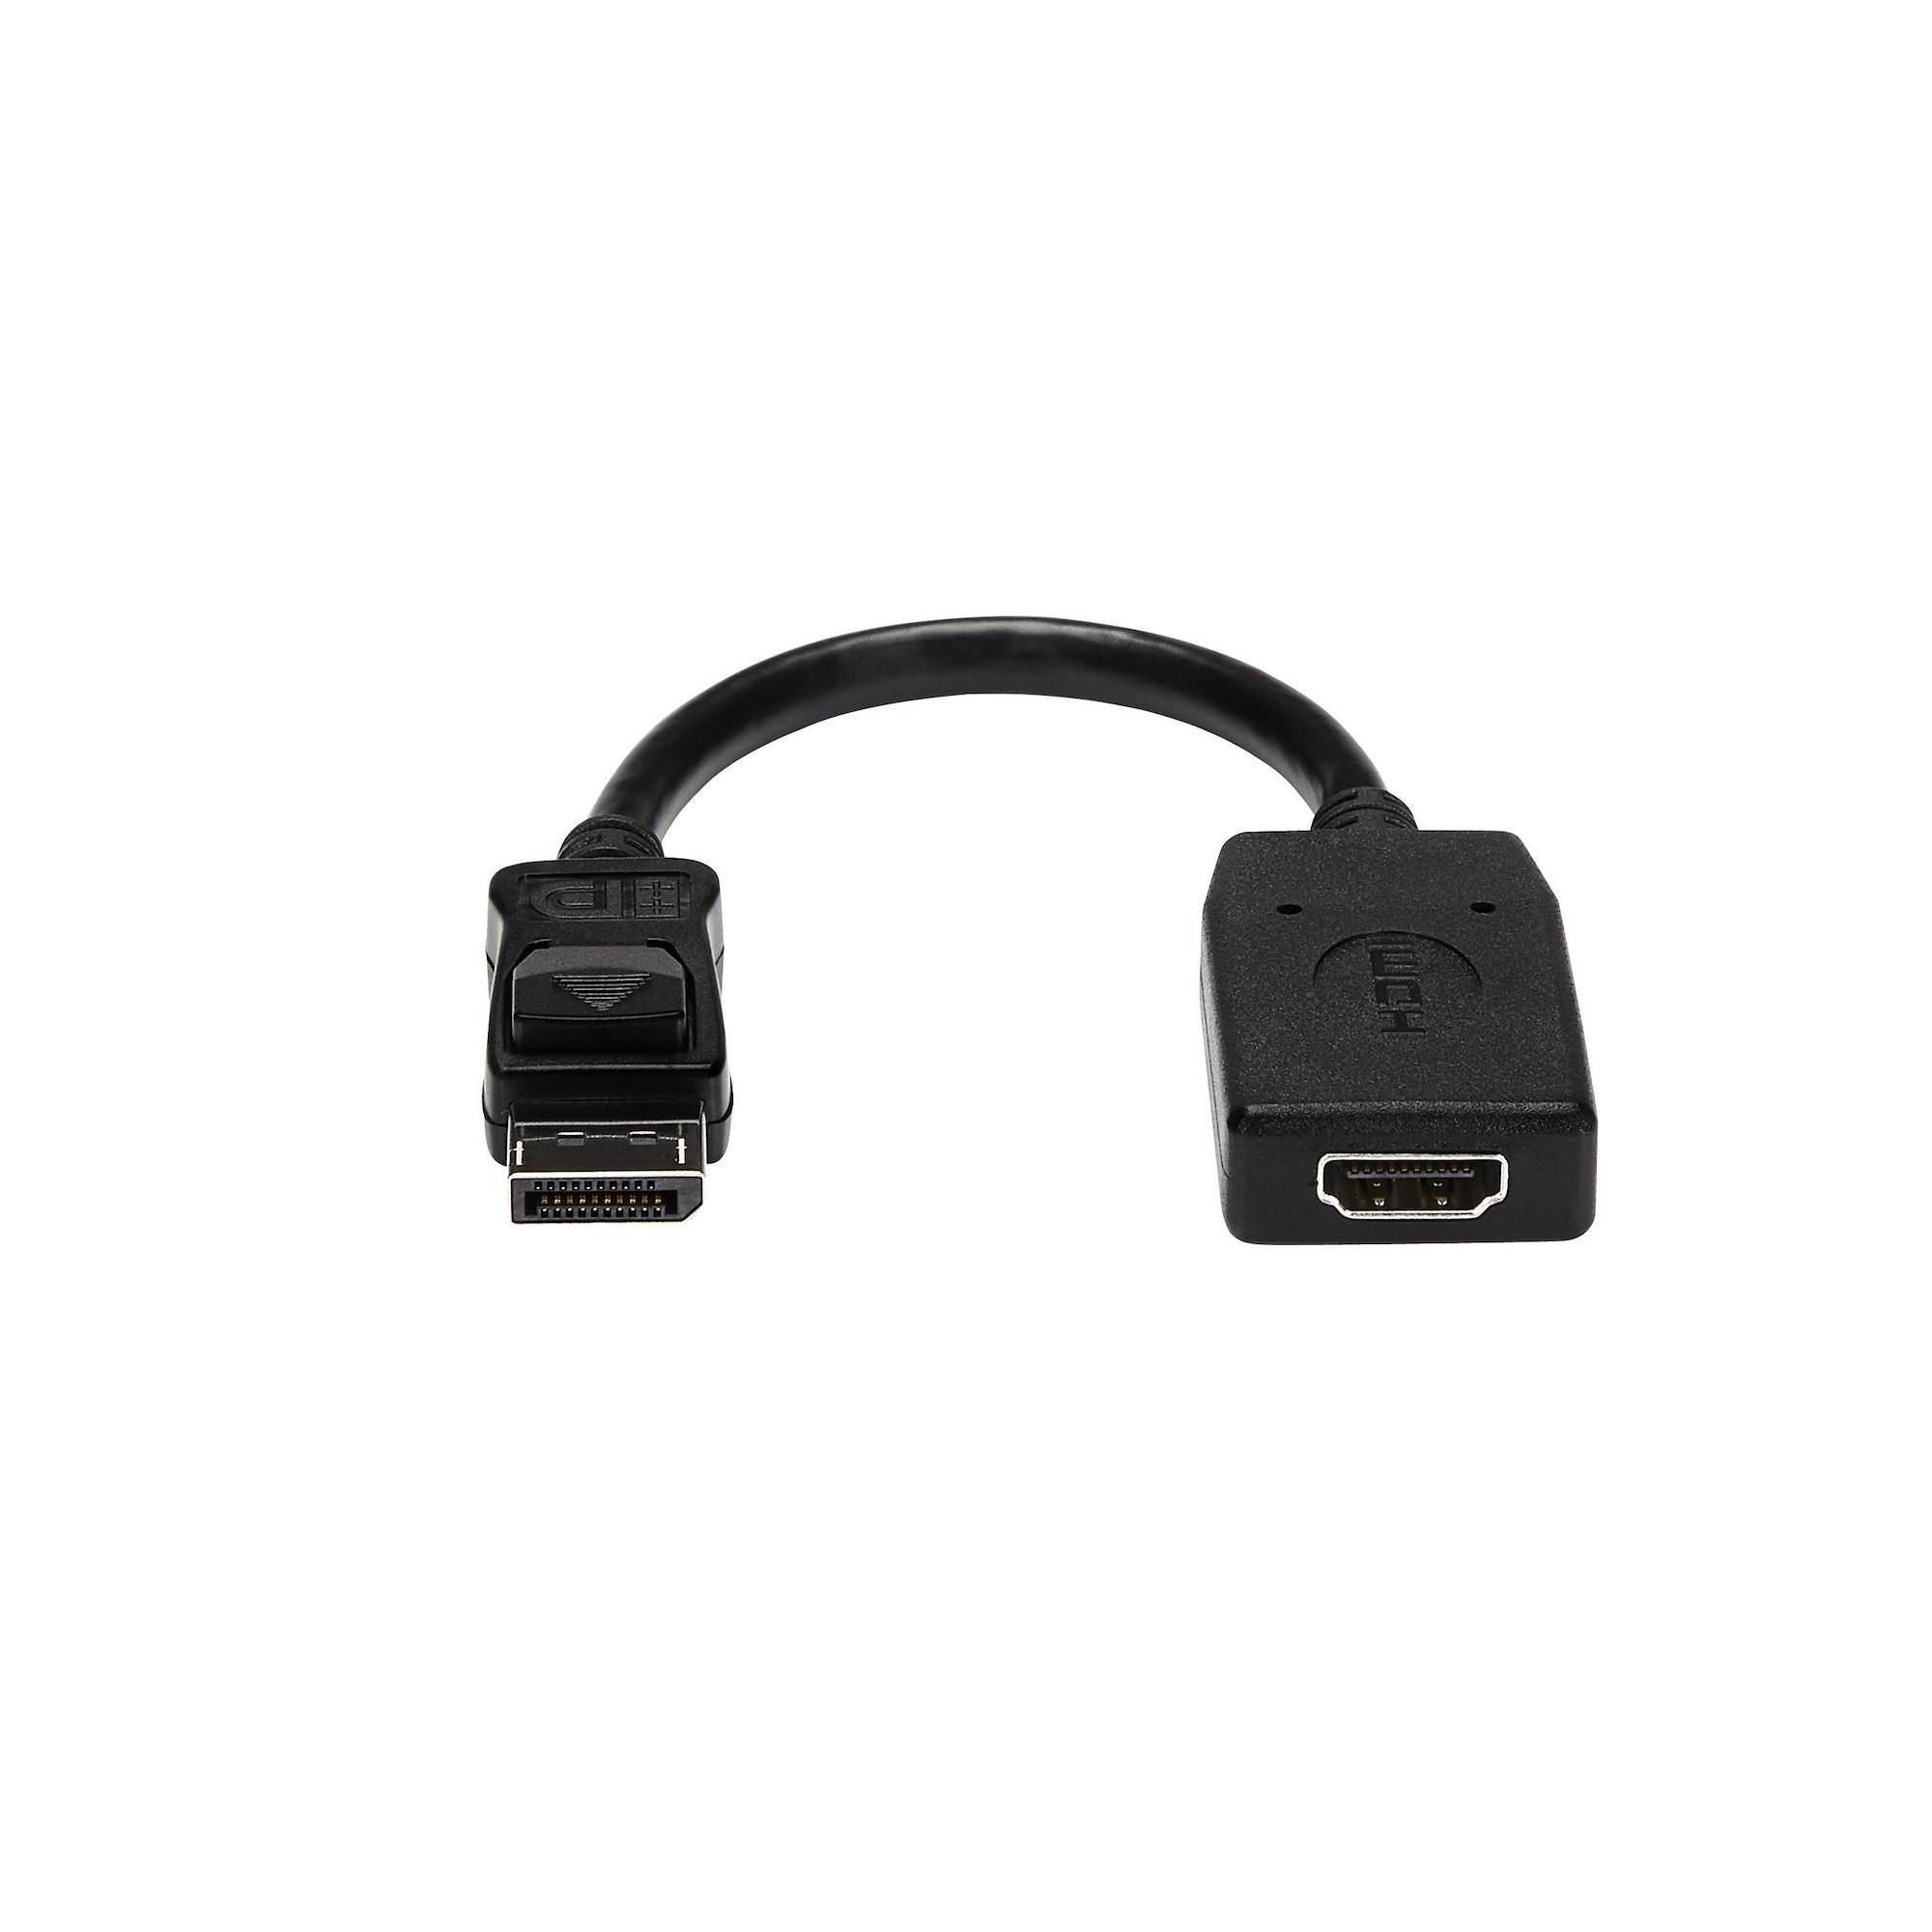 Adaptateur DisplayPort vers HDMI - Convertisseur Vidéo DP 1.2 vers HDMI  1080p - Câble DP vers HDMI pour Moniteur/Écran - Câble Passif DP à HDMI 